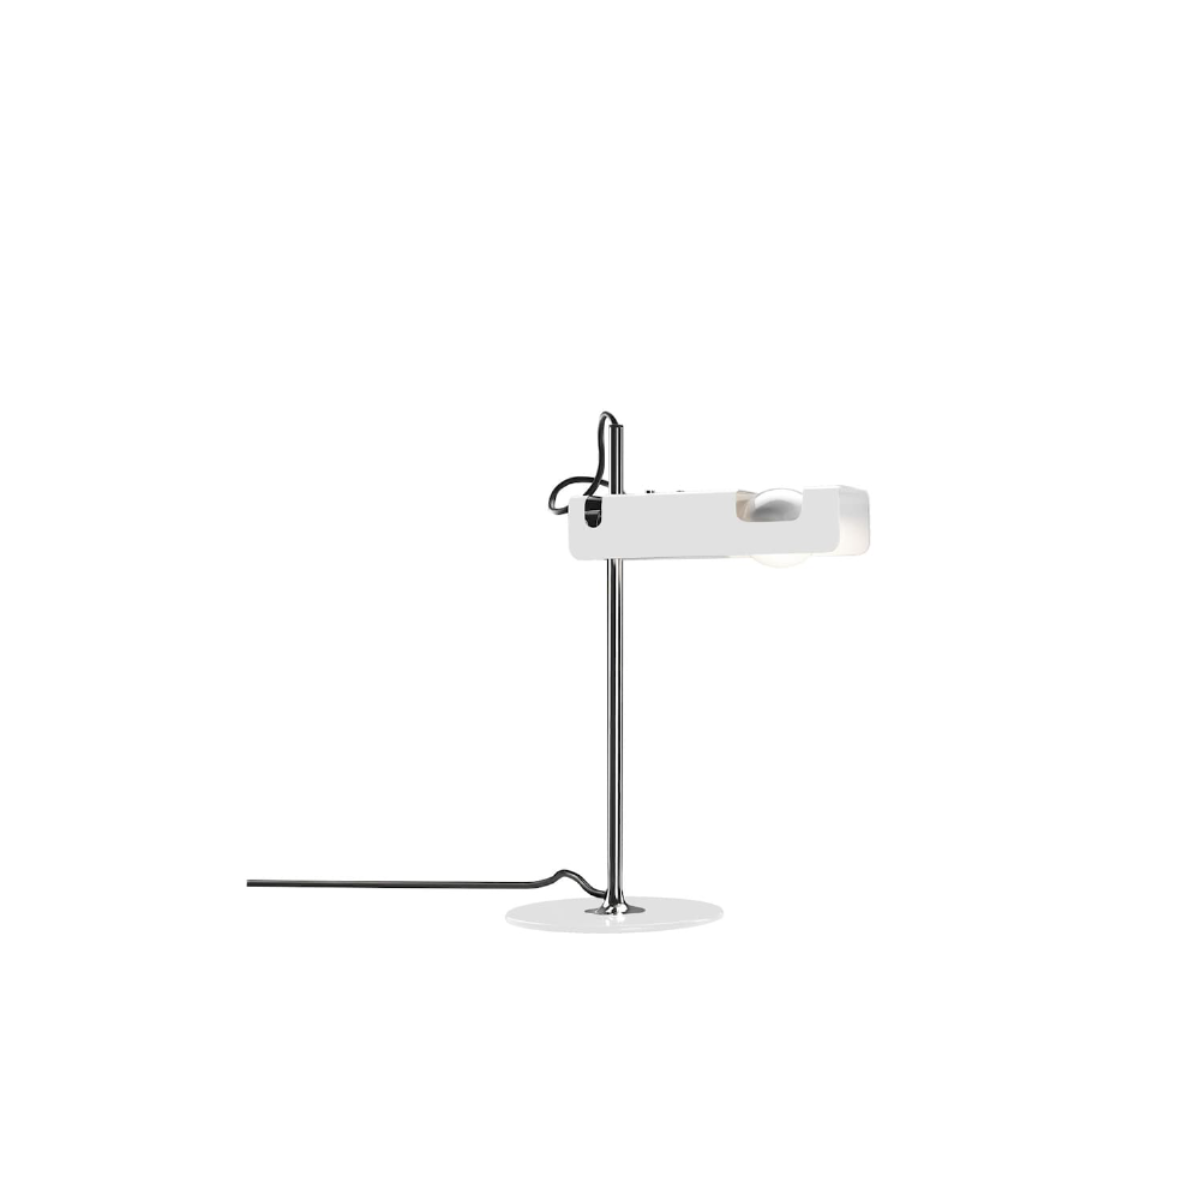 OLUCE Spider Table Lamp - White